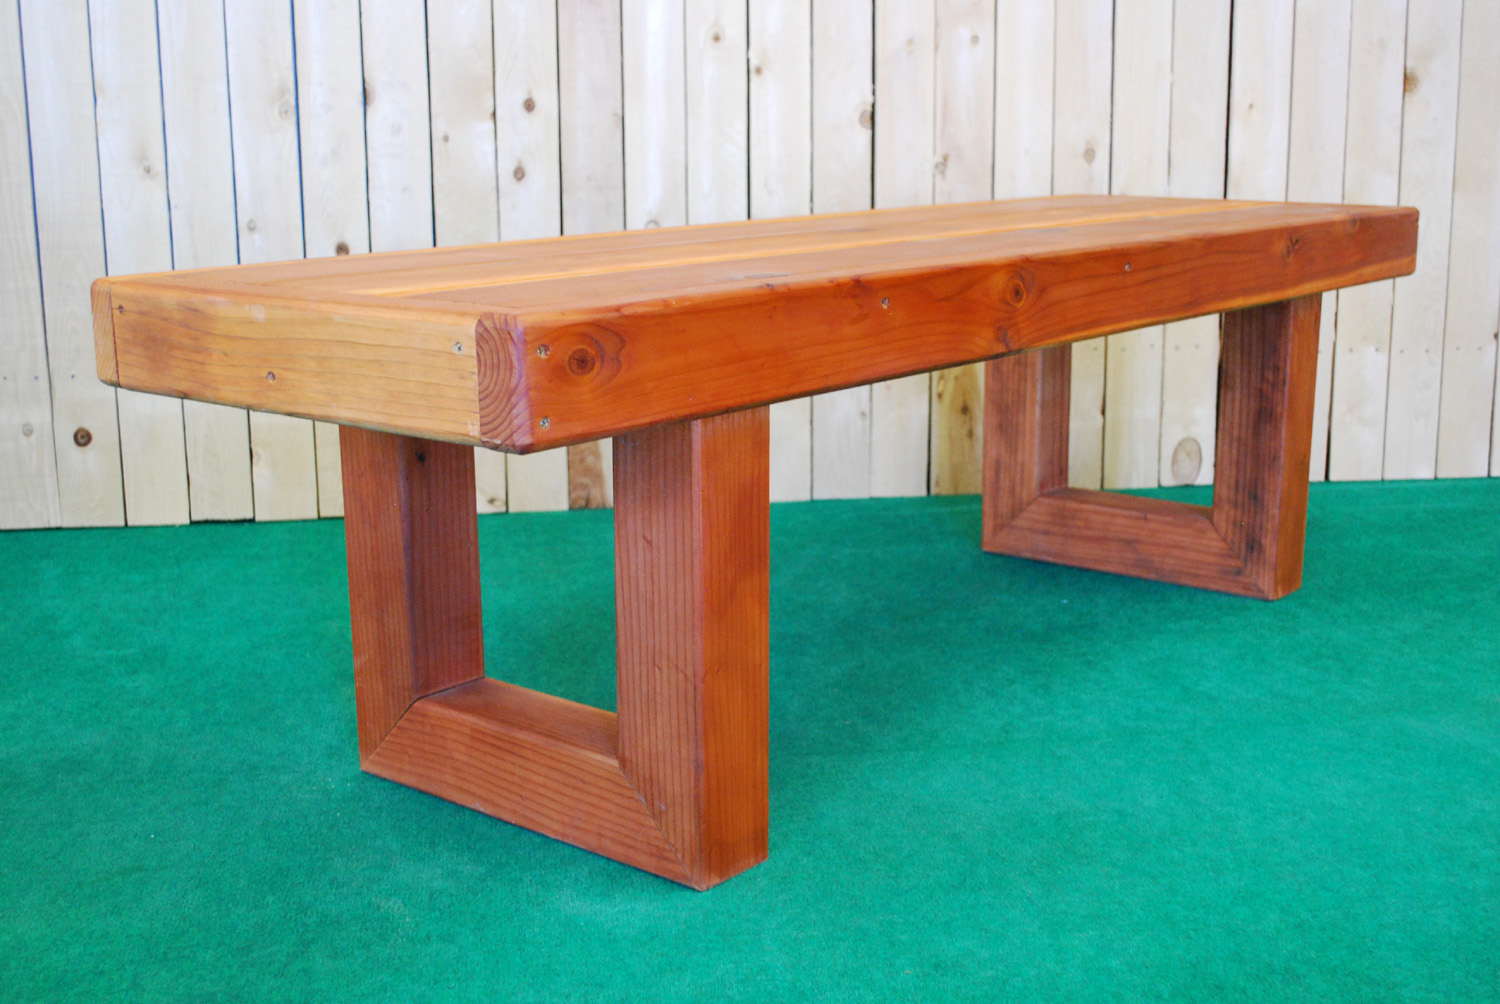 redwood contempo table (medium)